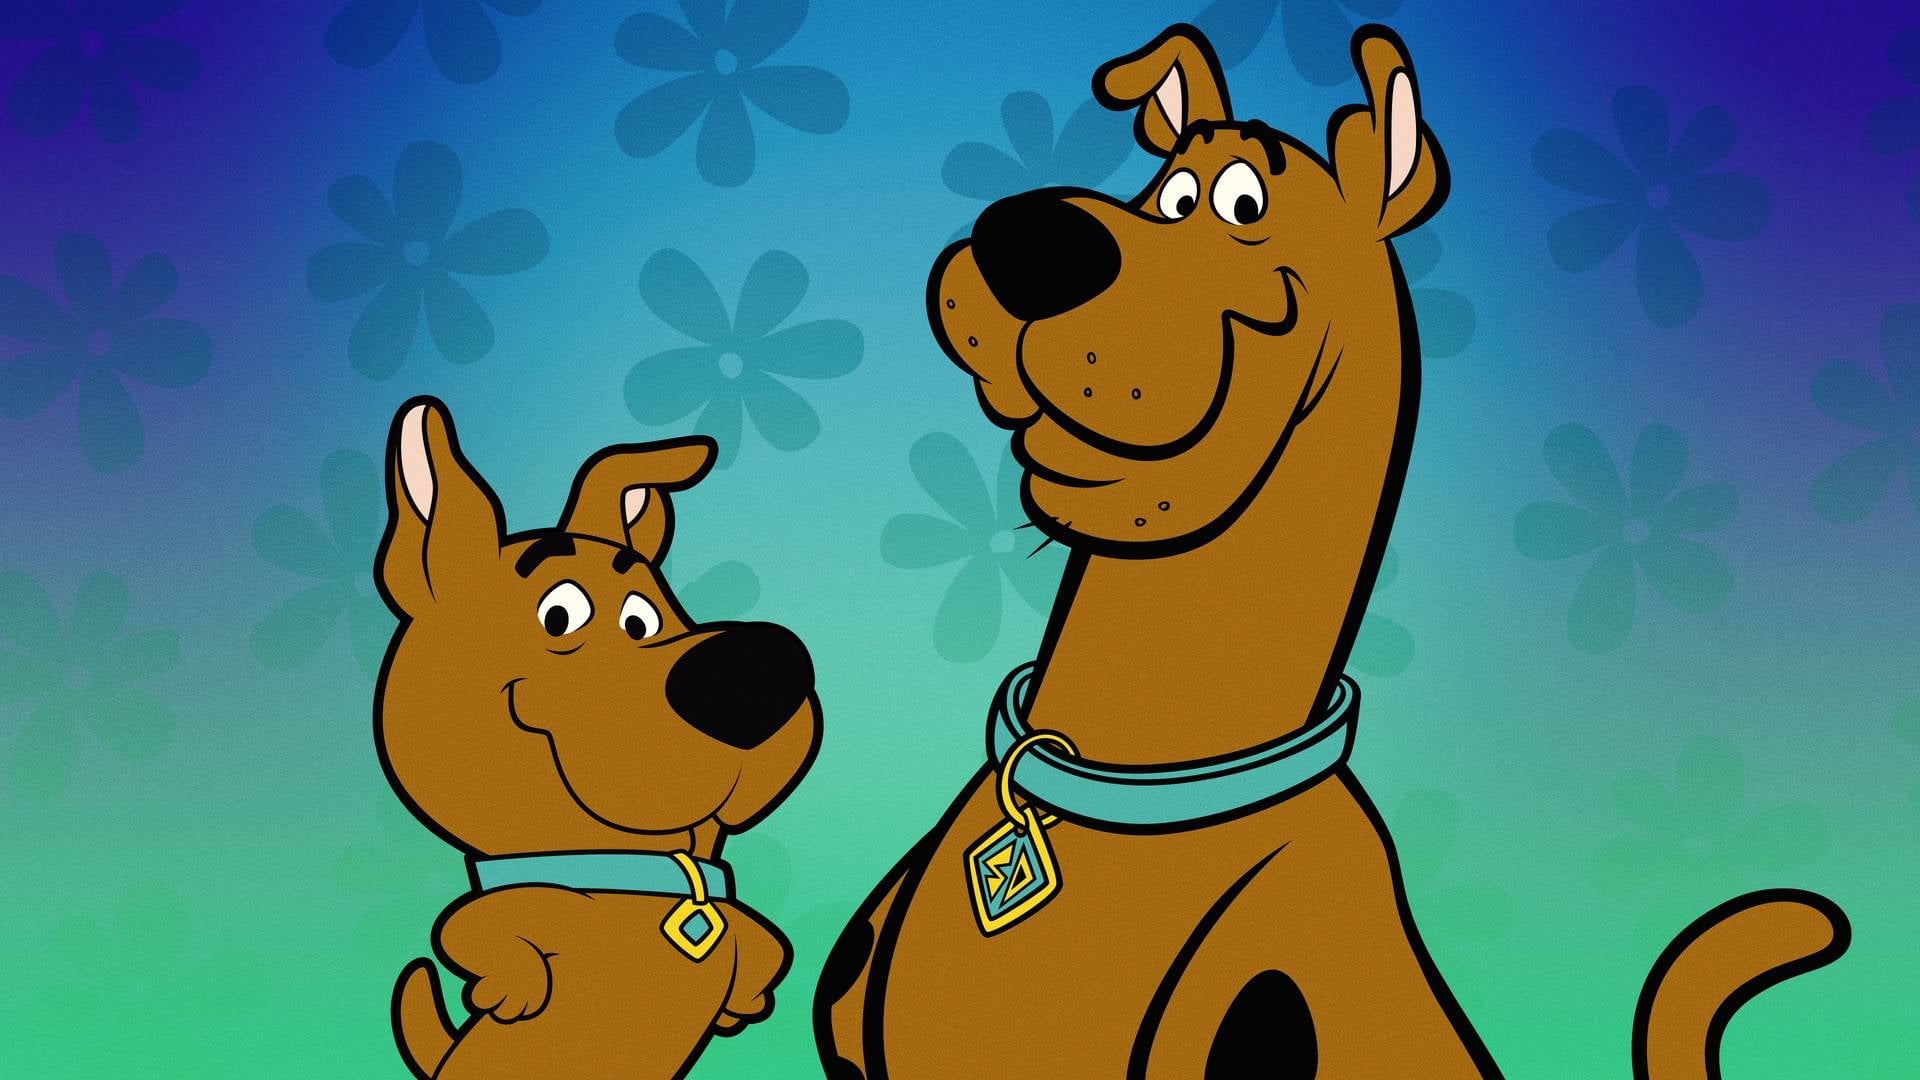 Scooby-Doo E Scrappy-Doo